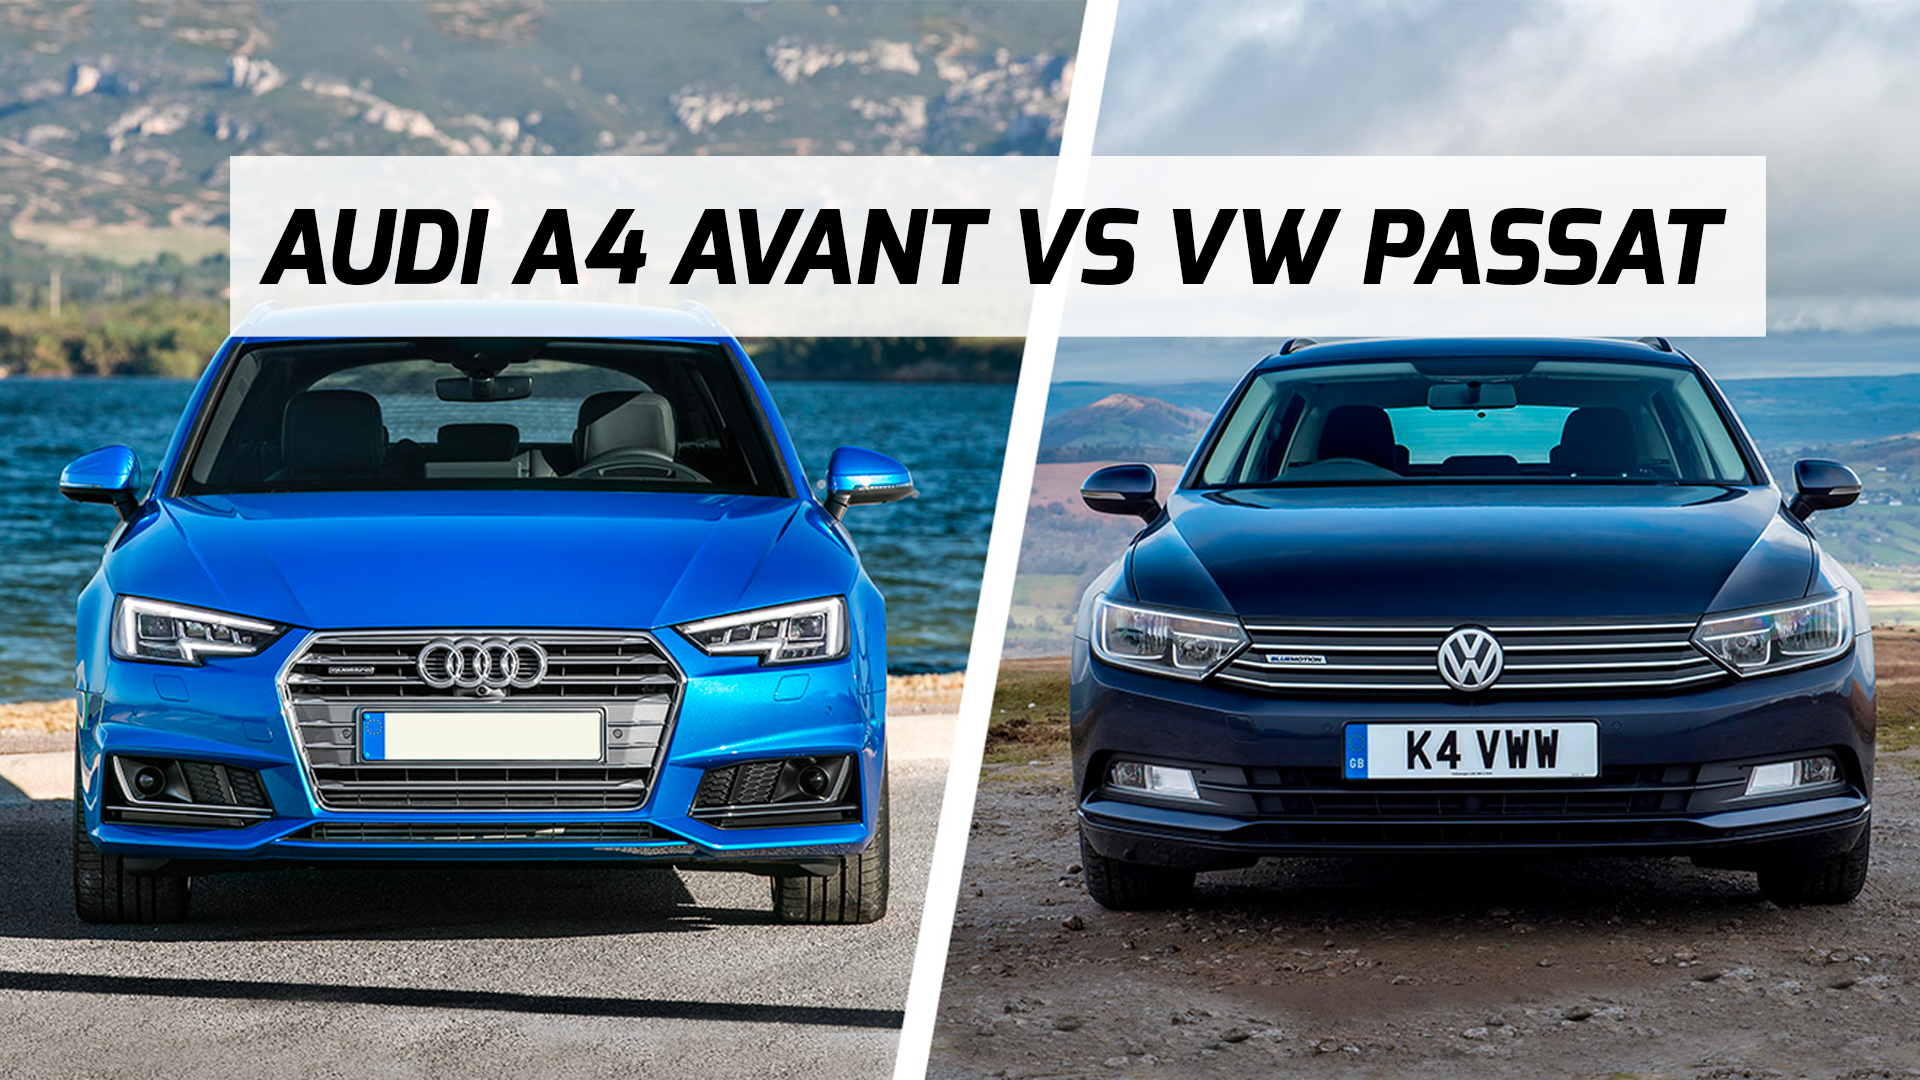 Photo Comparative Audi A4 occasion vs Volkswagen Passat Occasion